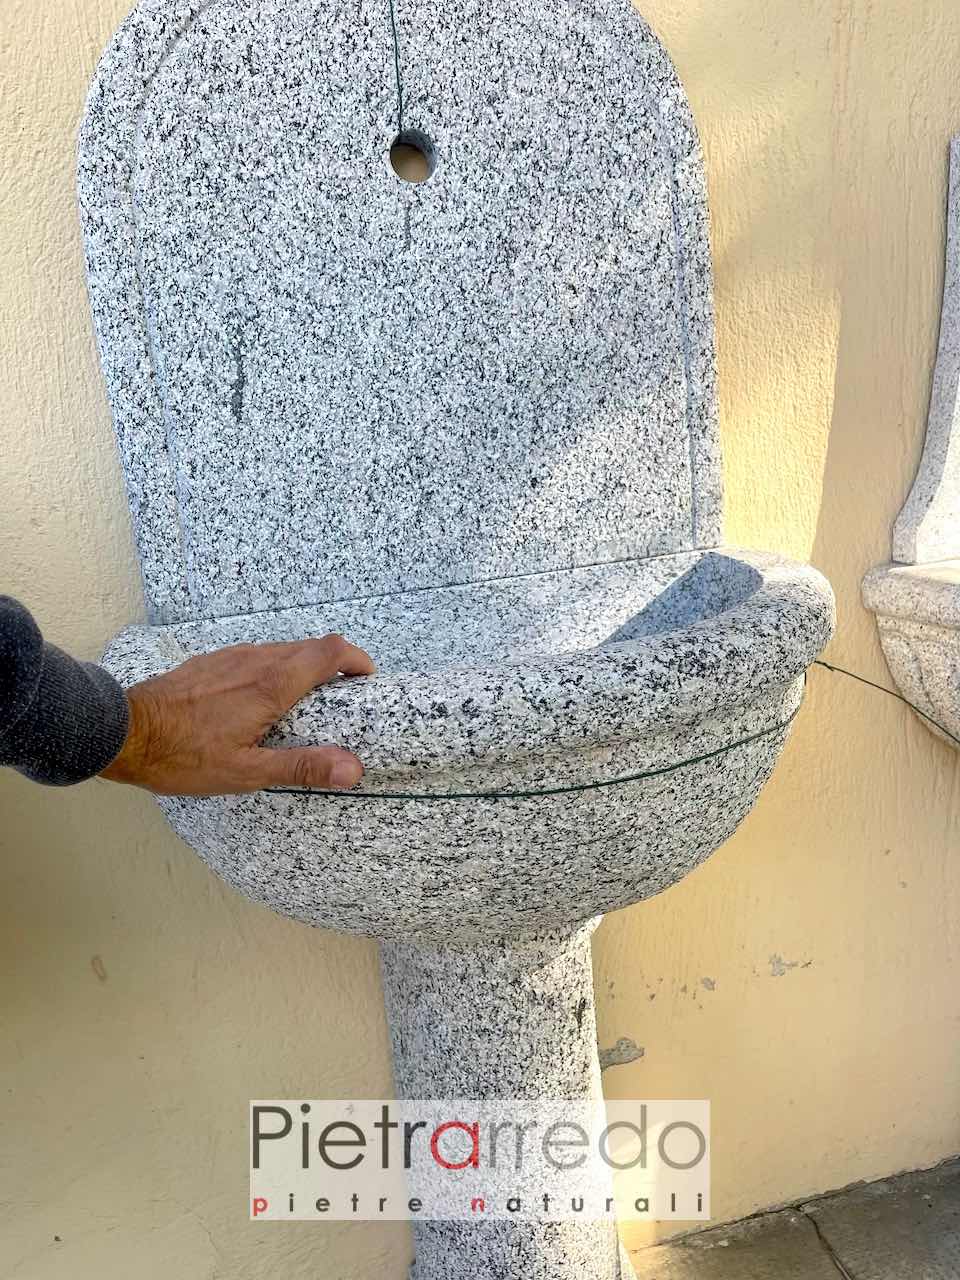 wall fountain gray granite sink italian natural stone price pietrarredo offers handmade